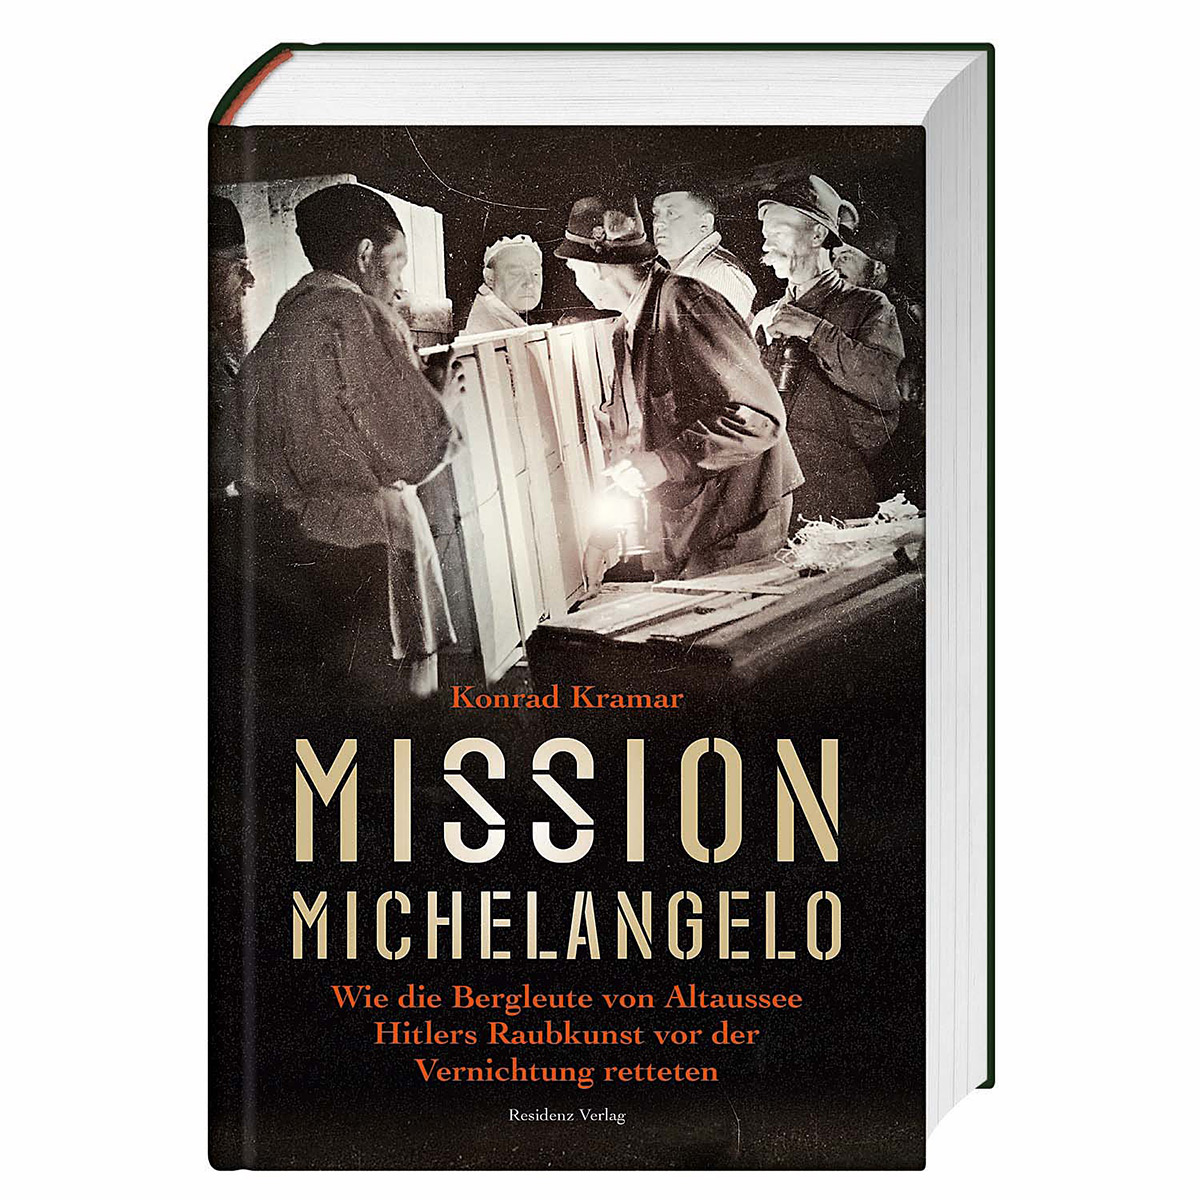 Mission Michelangelo von Residenz